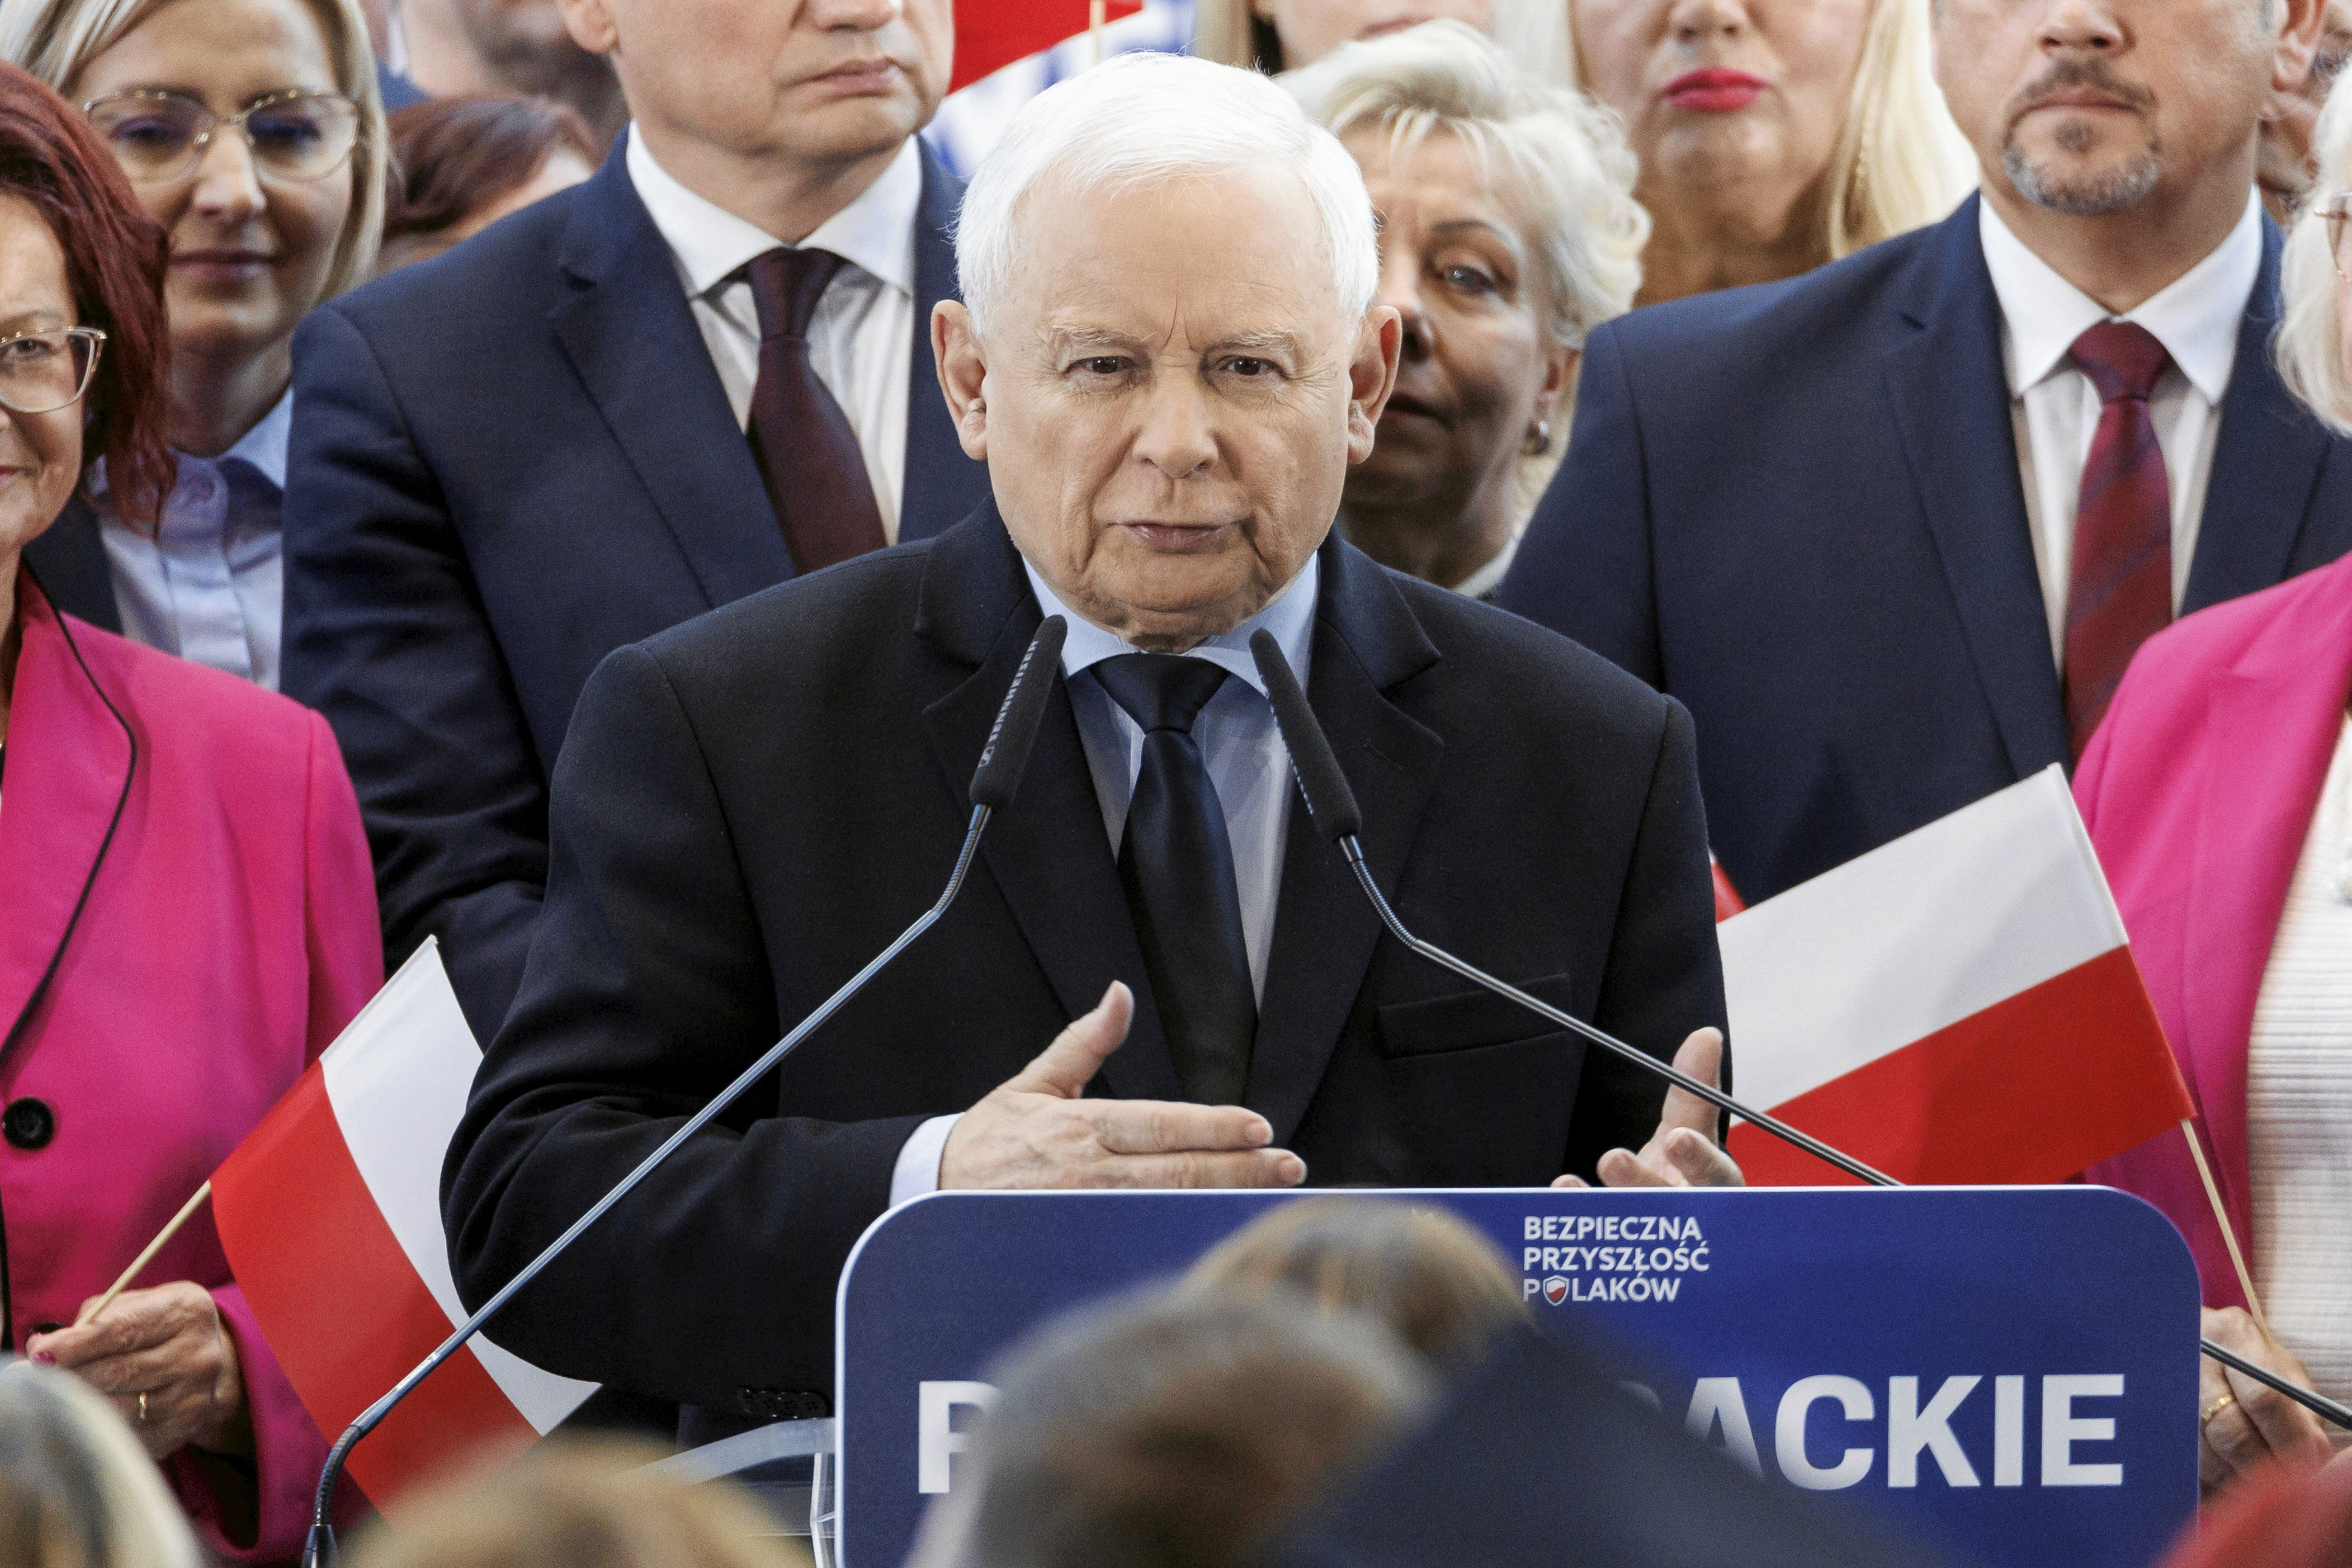 kaczyński miał pojawić się na konferencji kamińskiego i wąsika. ale nie przyszedł. gdzie jest prezes?